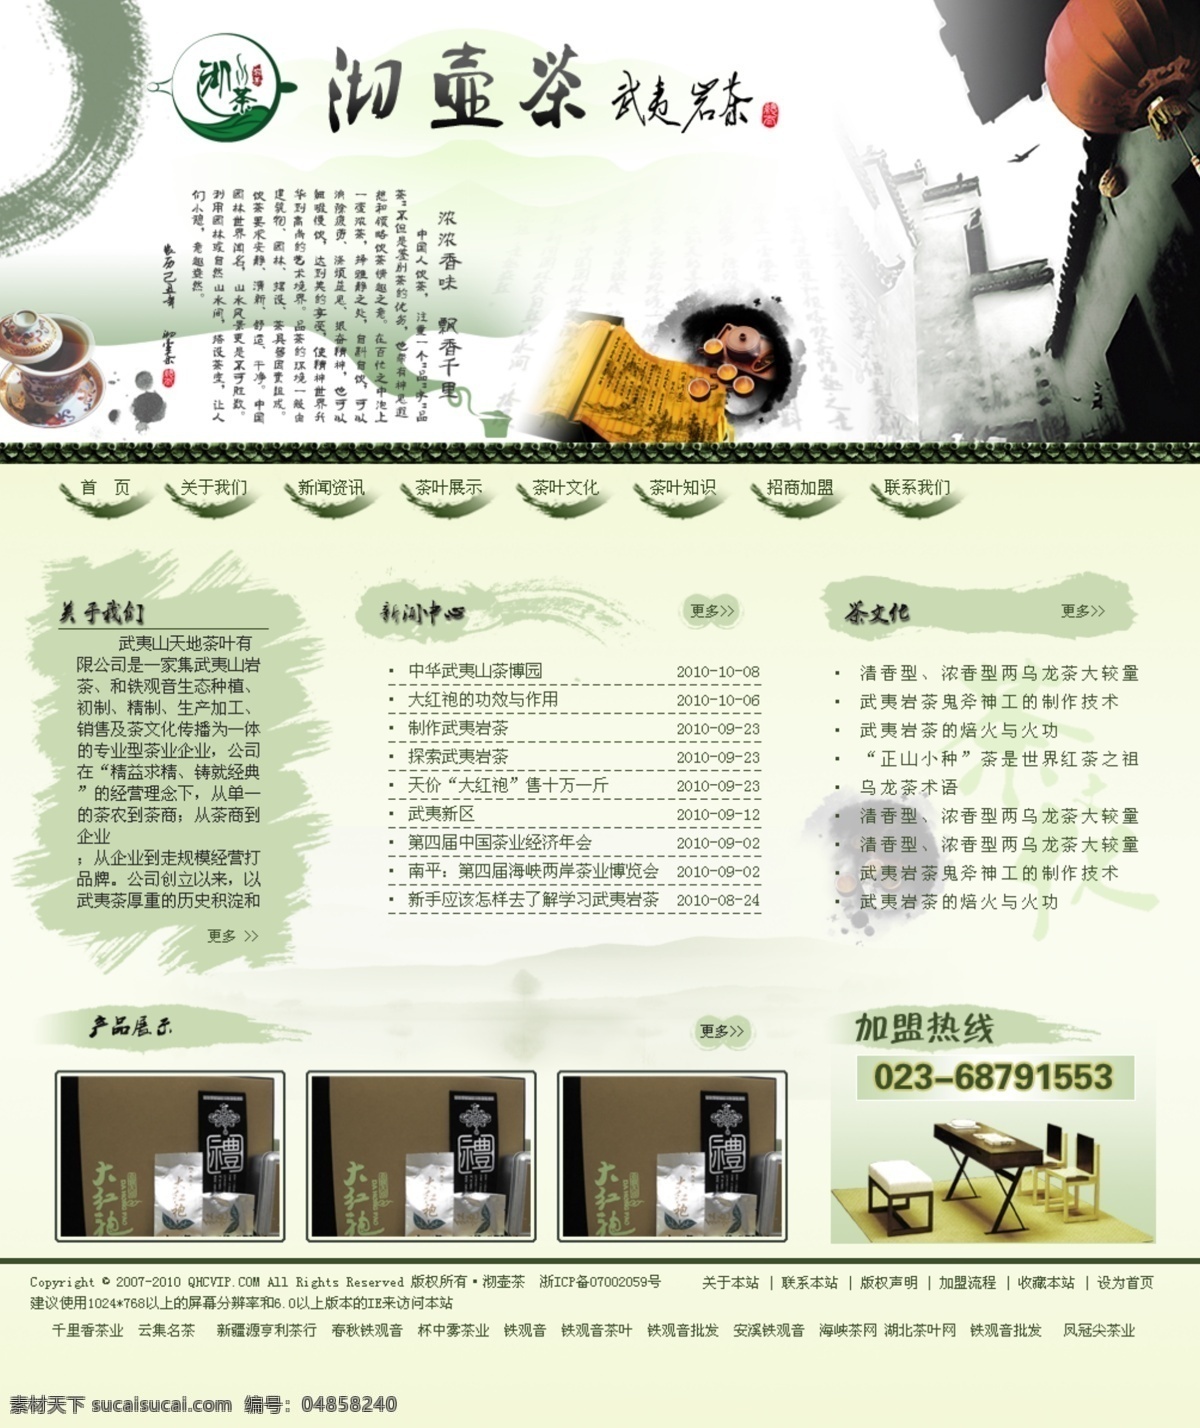 茶叶 古典风格 水墨画 网页模板 网站 源文件 中国古典 中文模版 模板下载 茶叶网站 psd源文件 餐饮素材